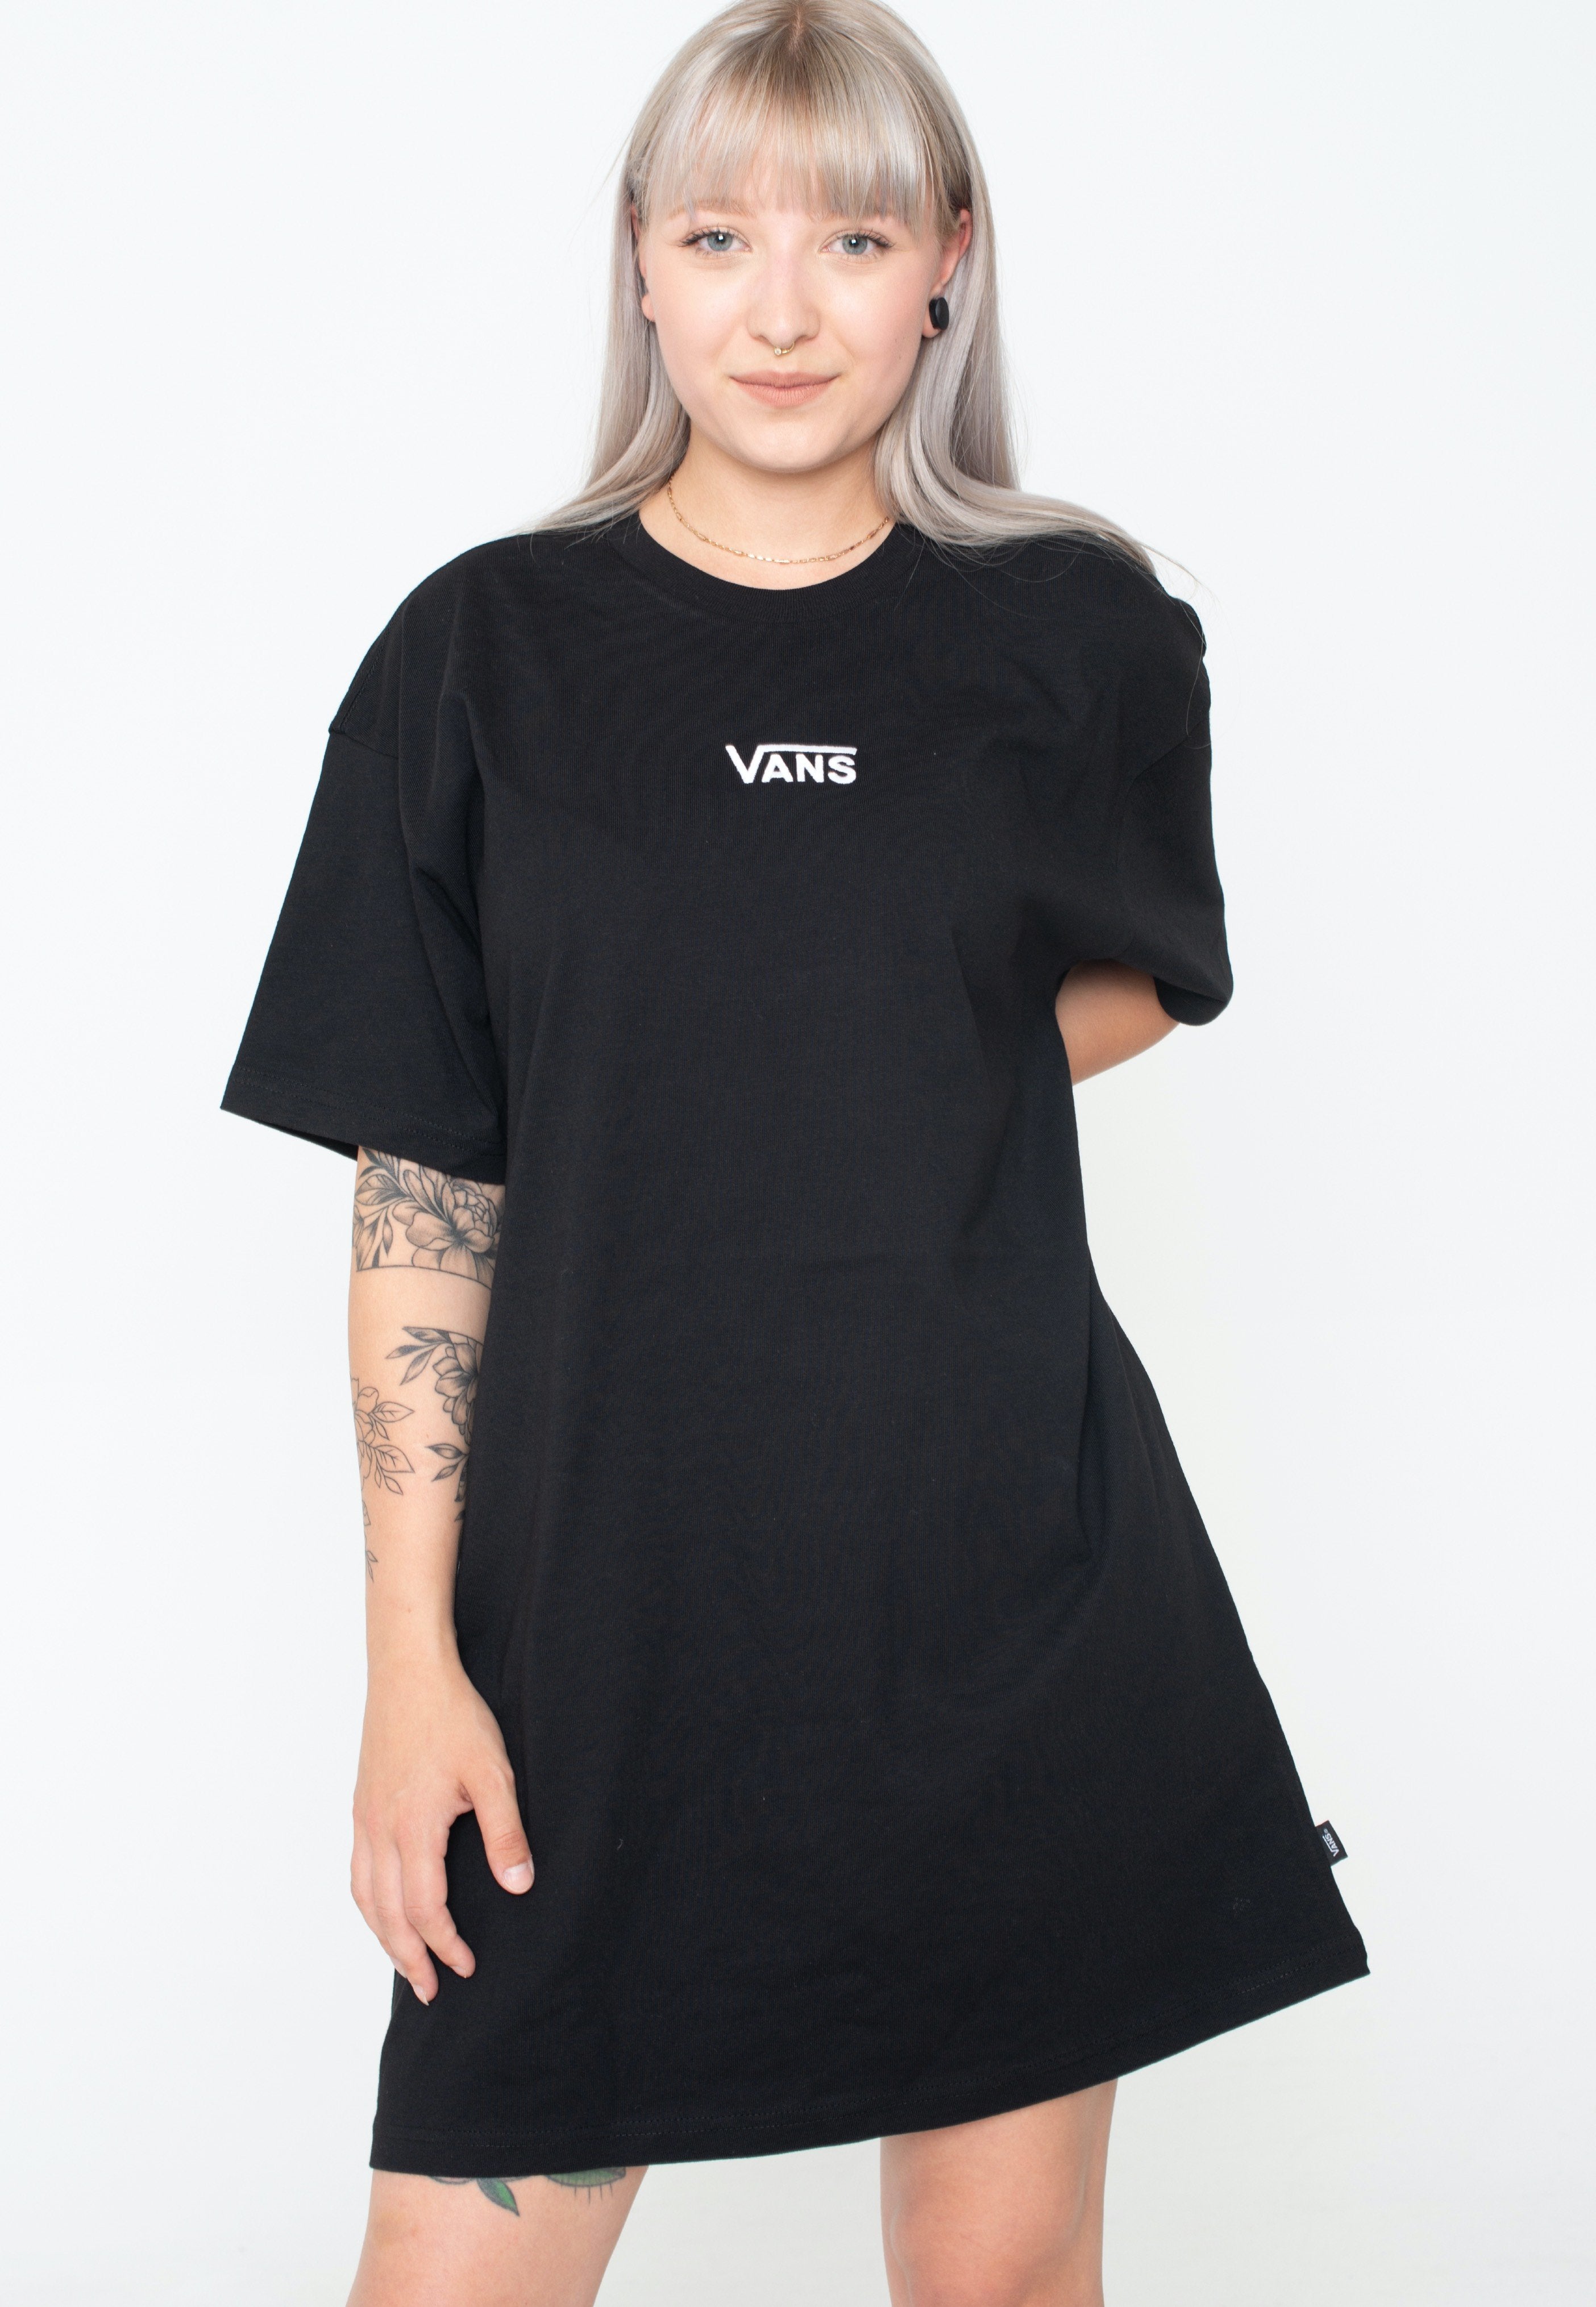 Vans - Center Vee Tee Black - Dress